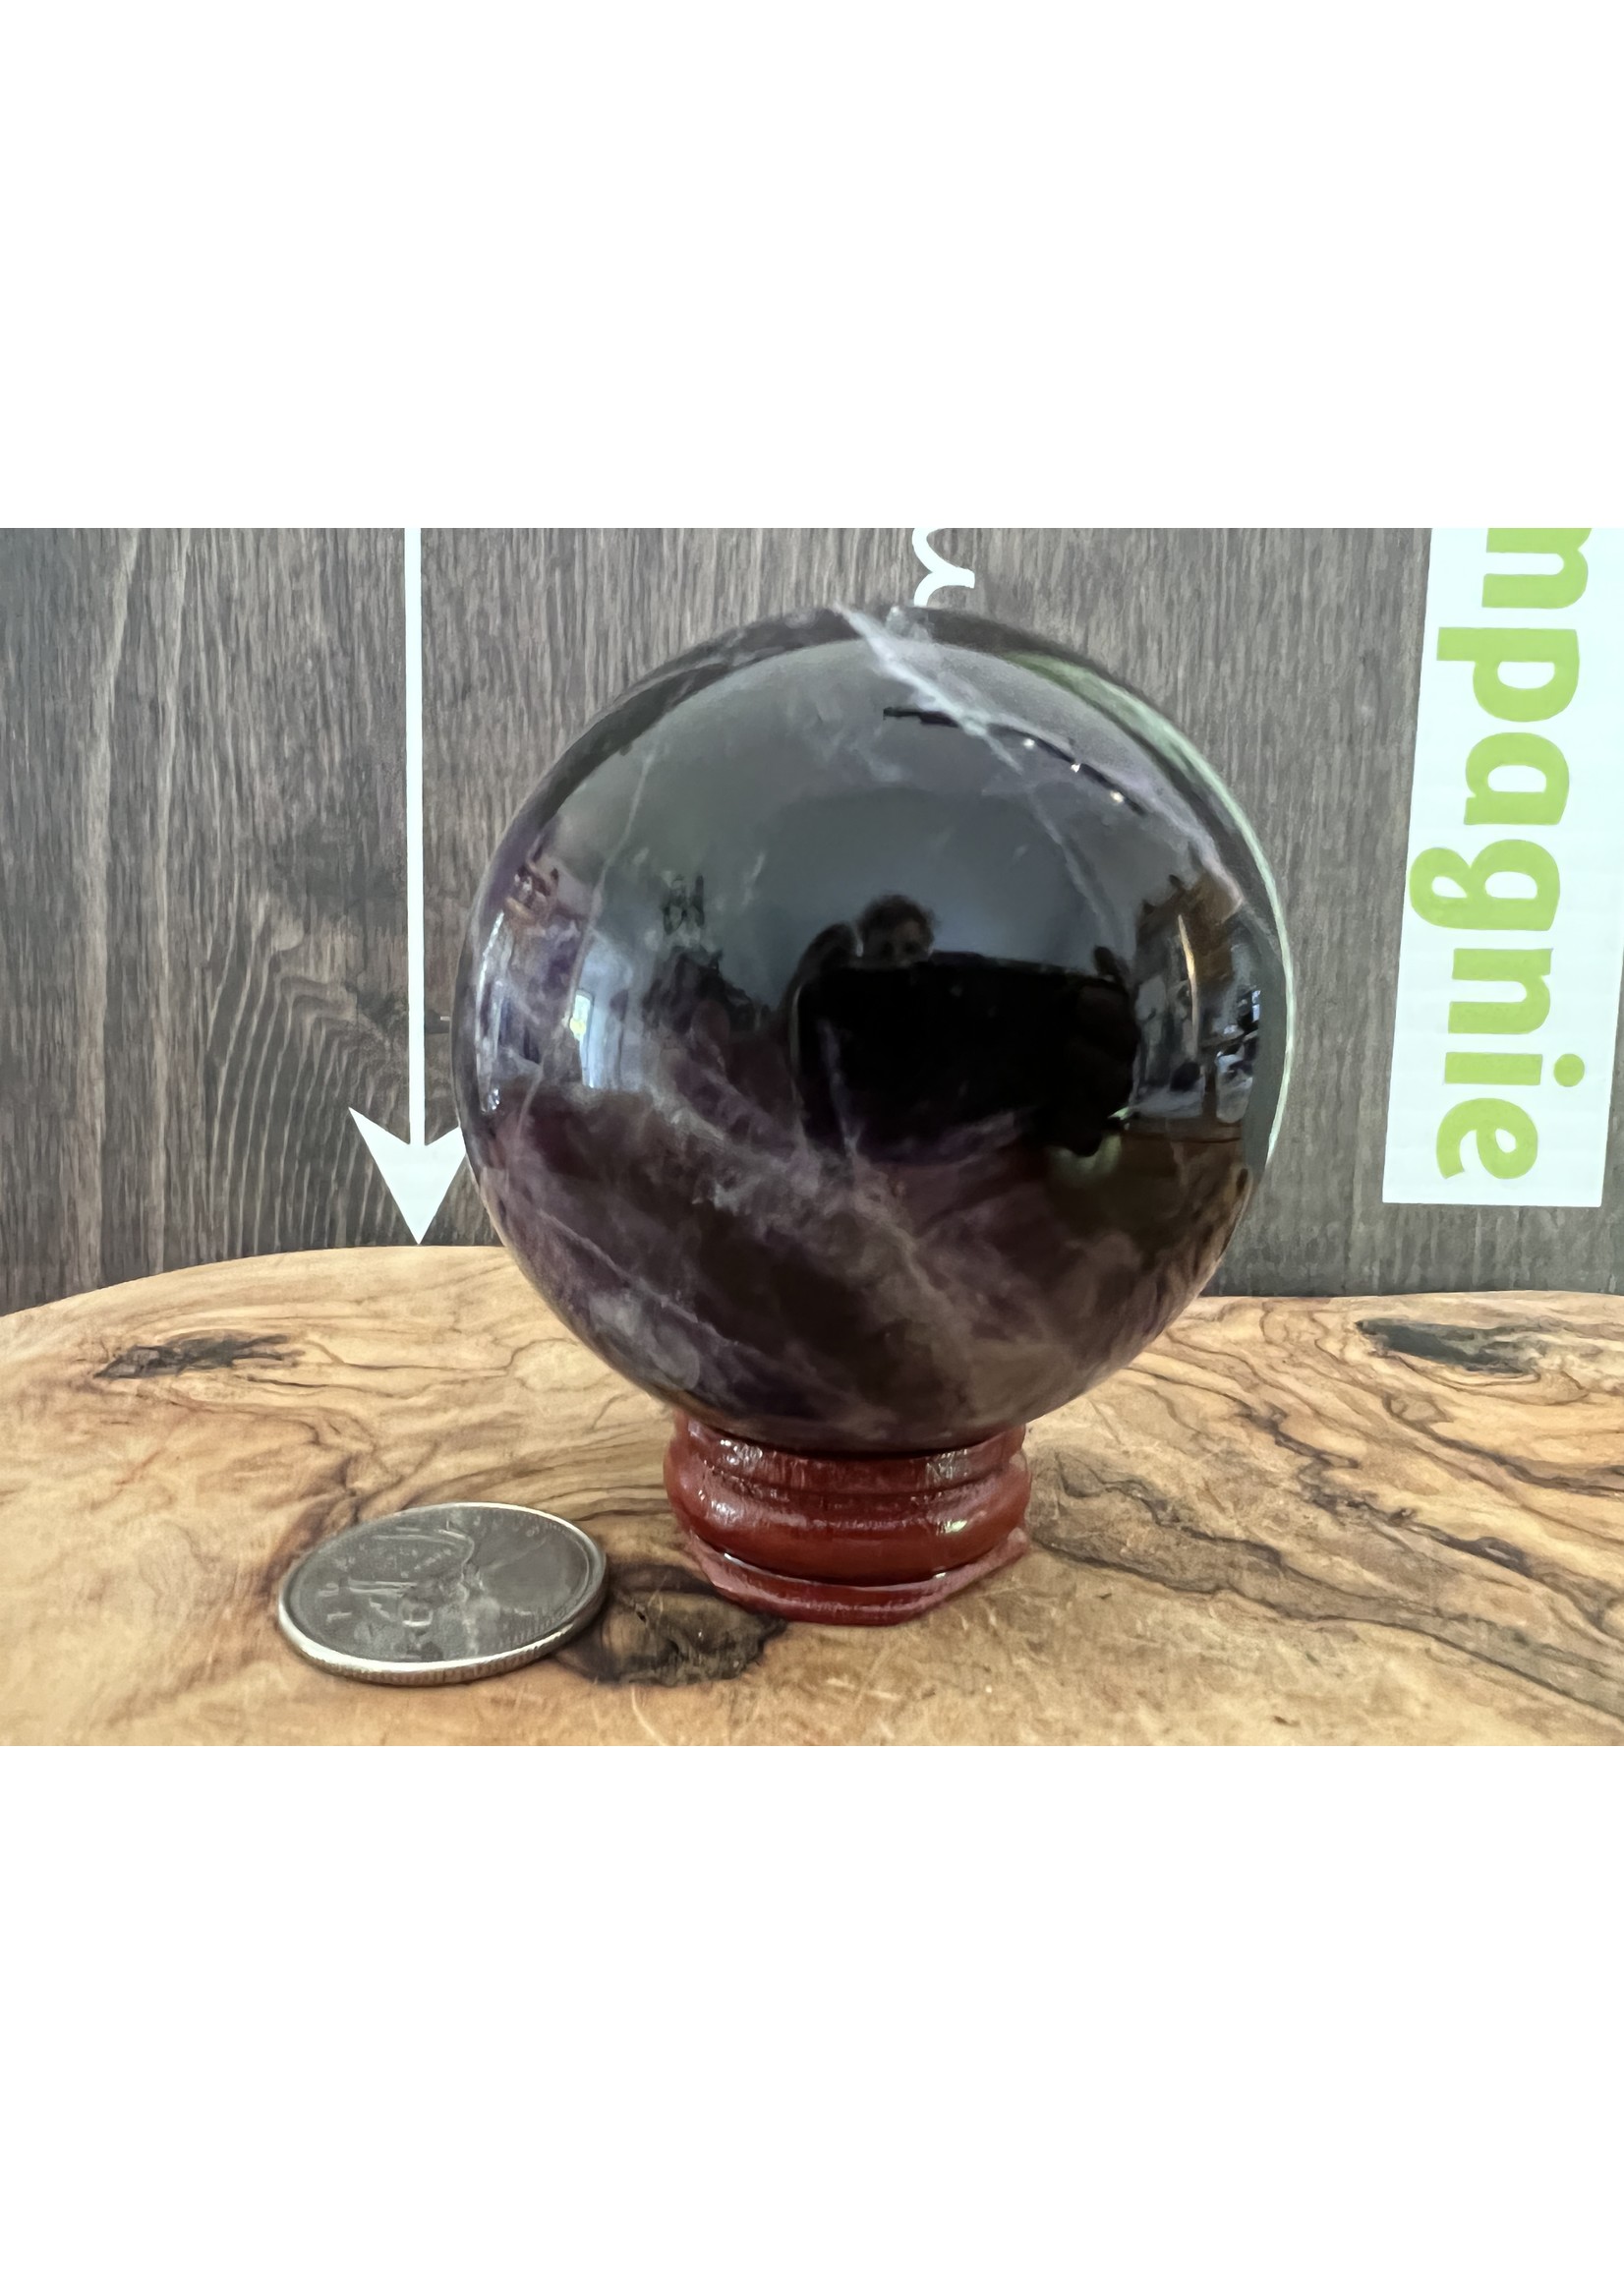 sphère fluorite violette de haute qualité, calme les agitations et la réflexion en favorisant le lâcher prise, absorbe les énergies nocives